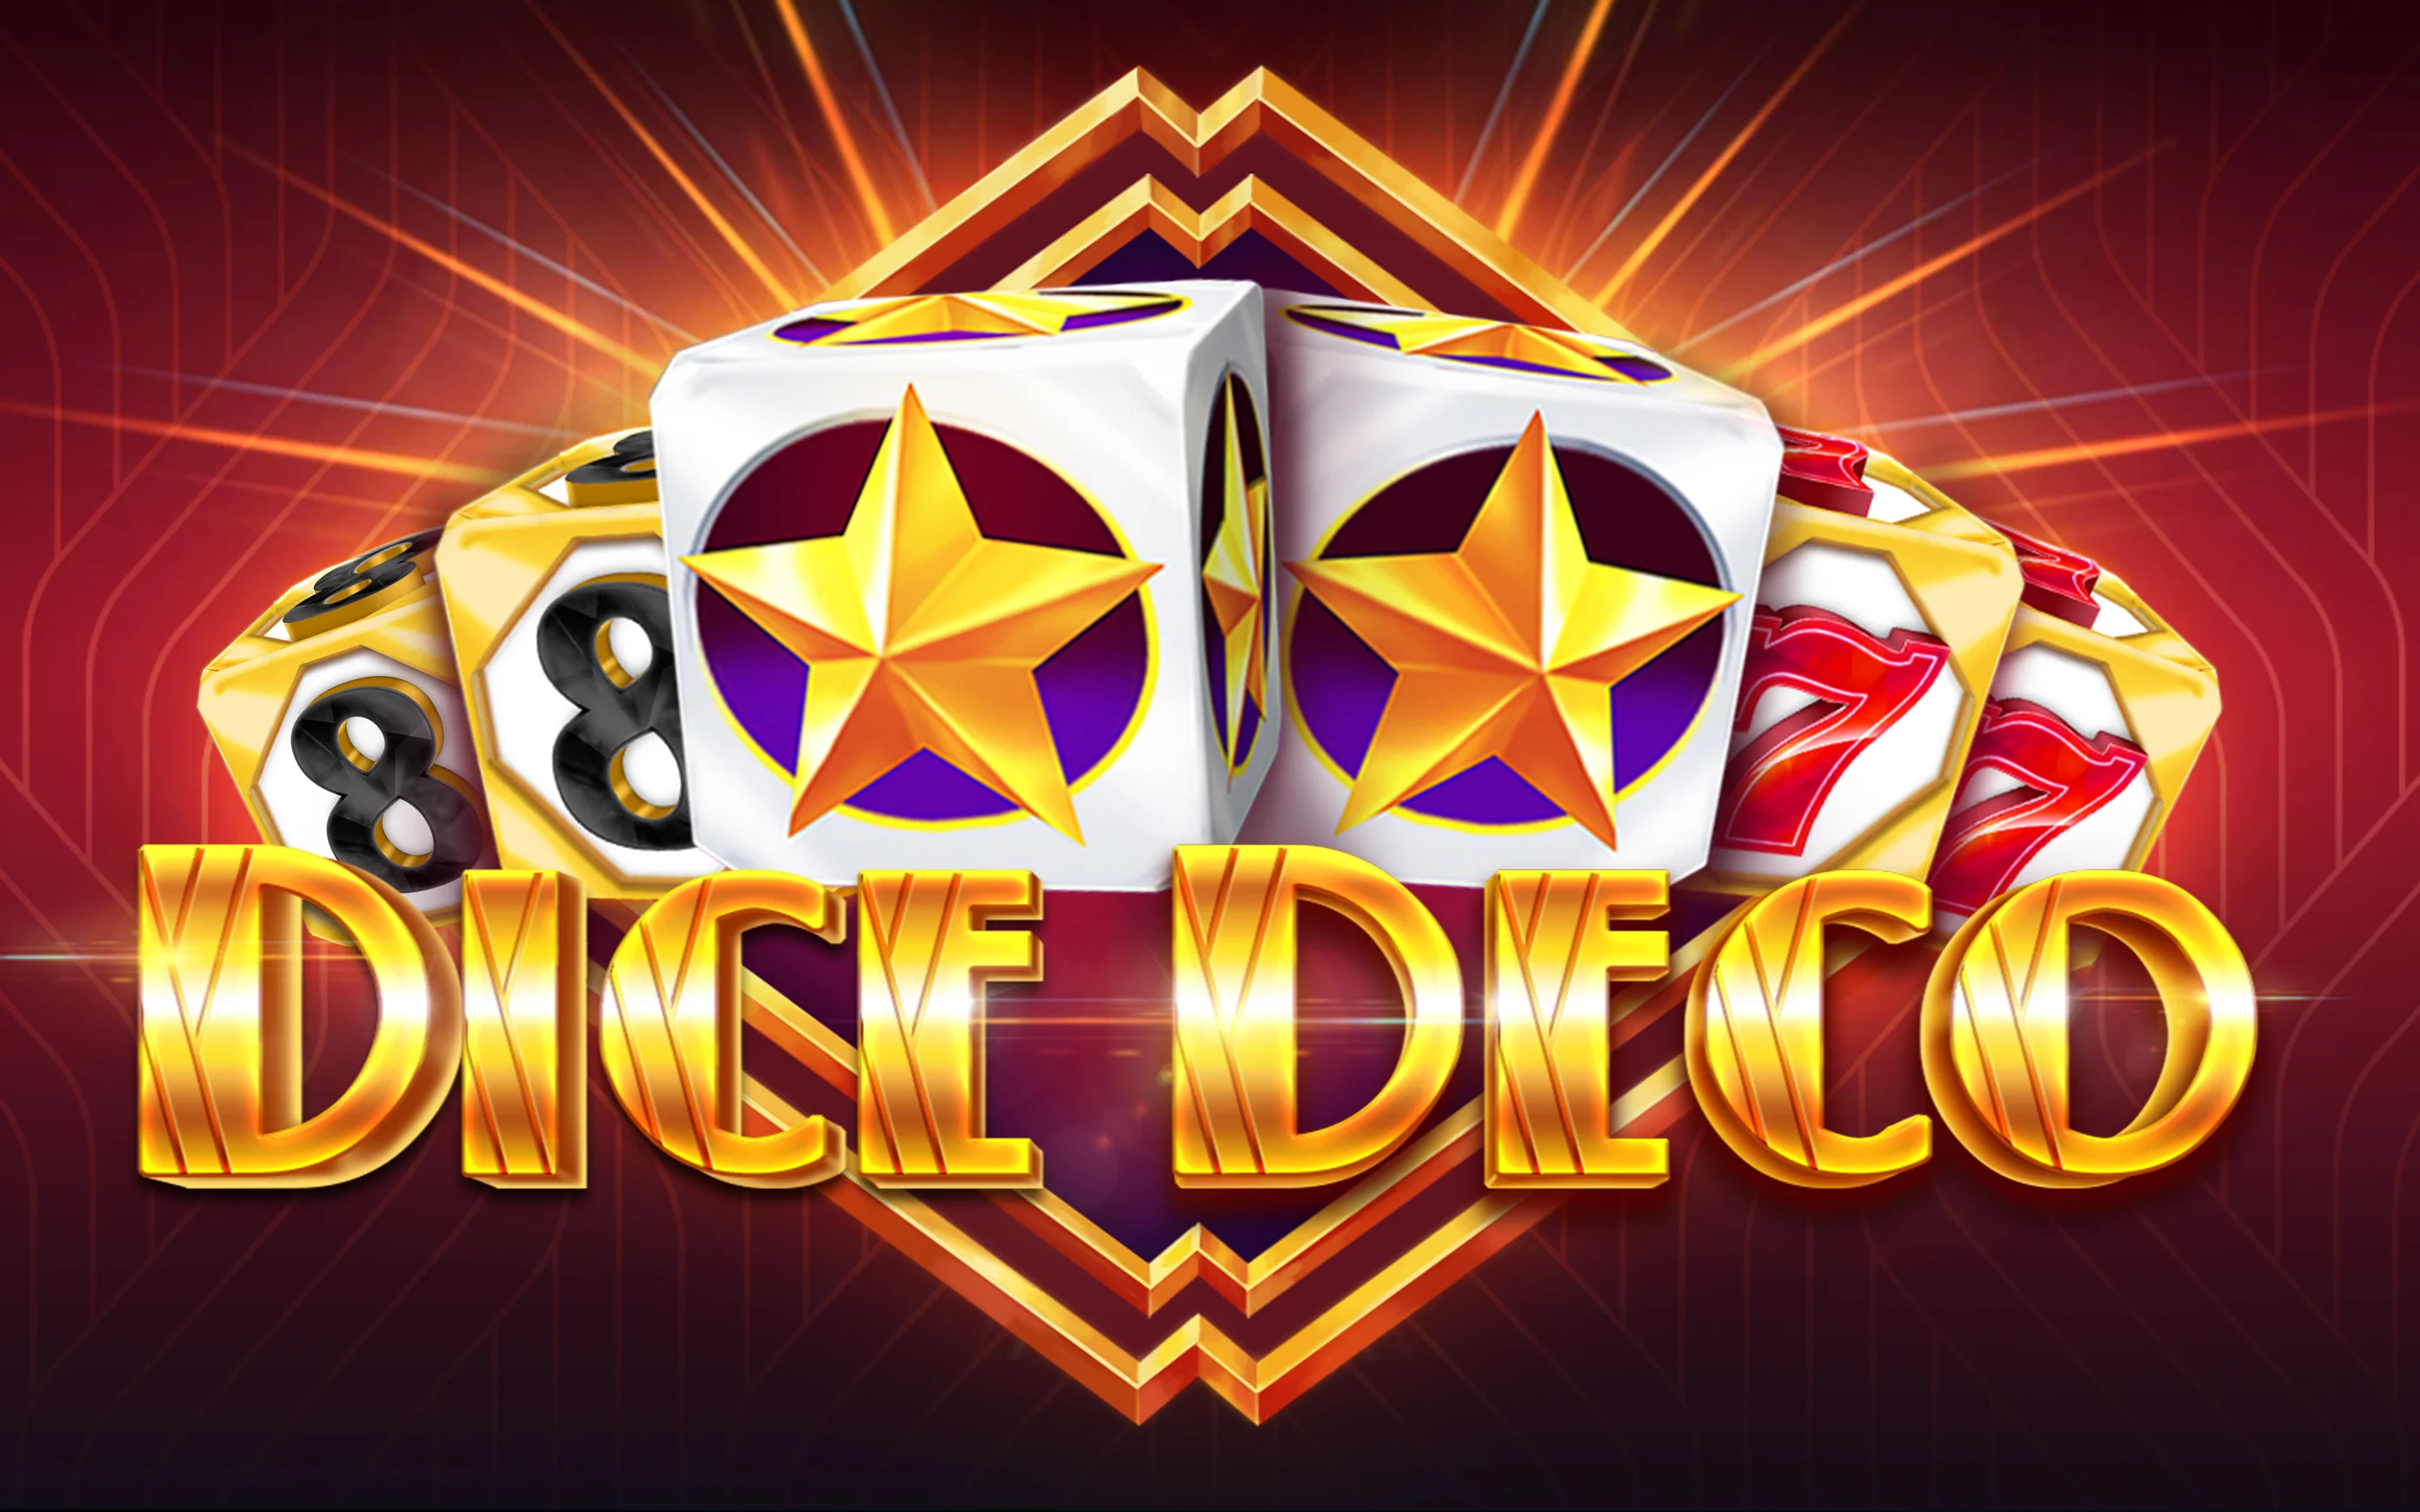 Speel Dice Deco op Starcasino.be online casino